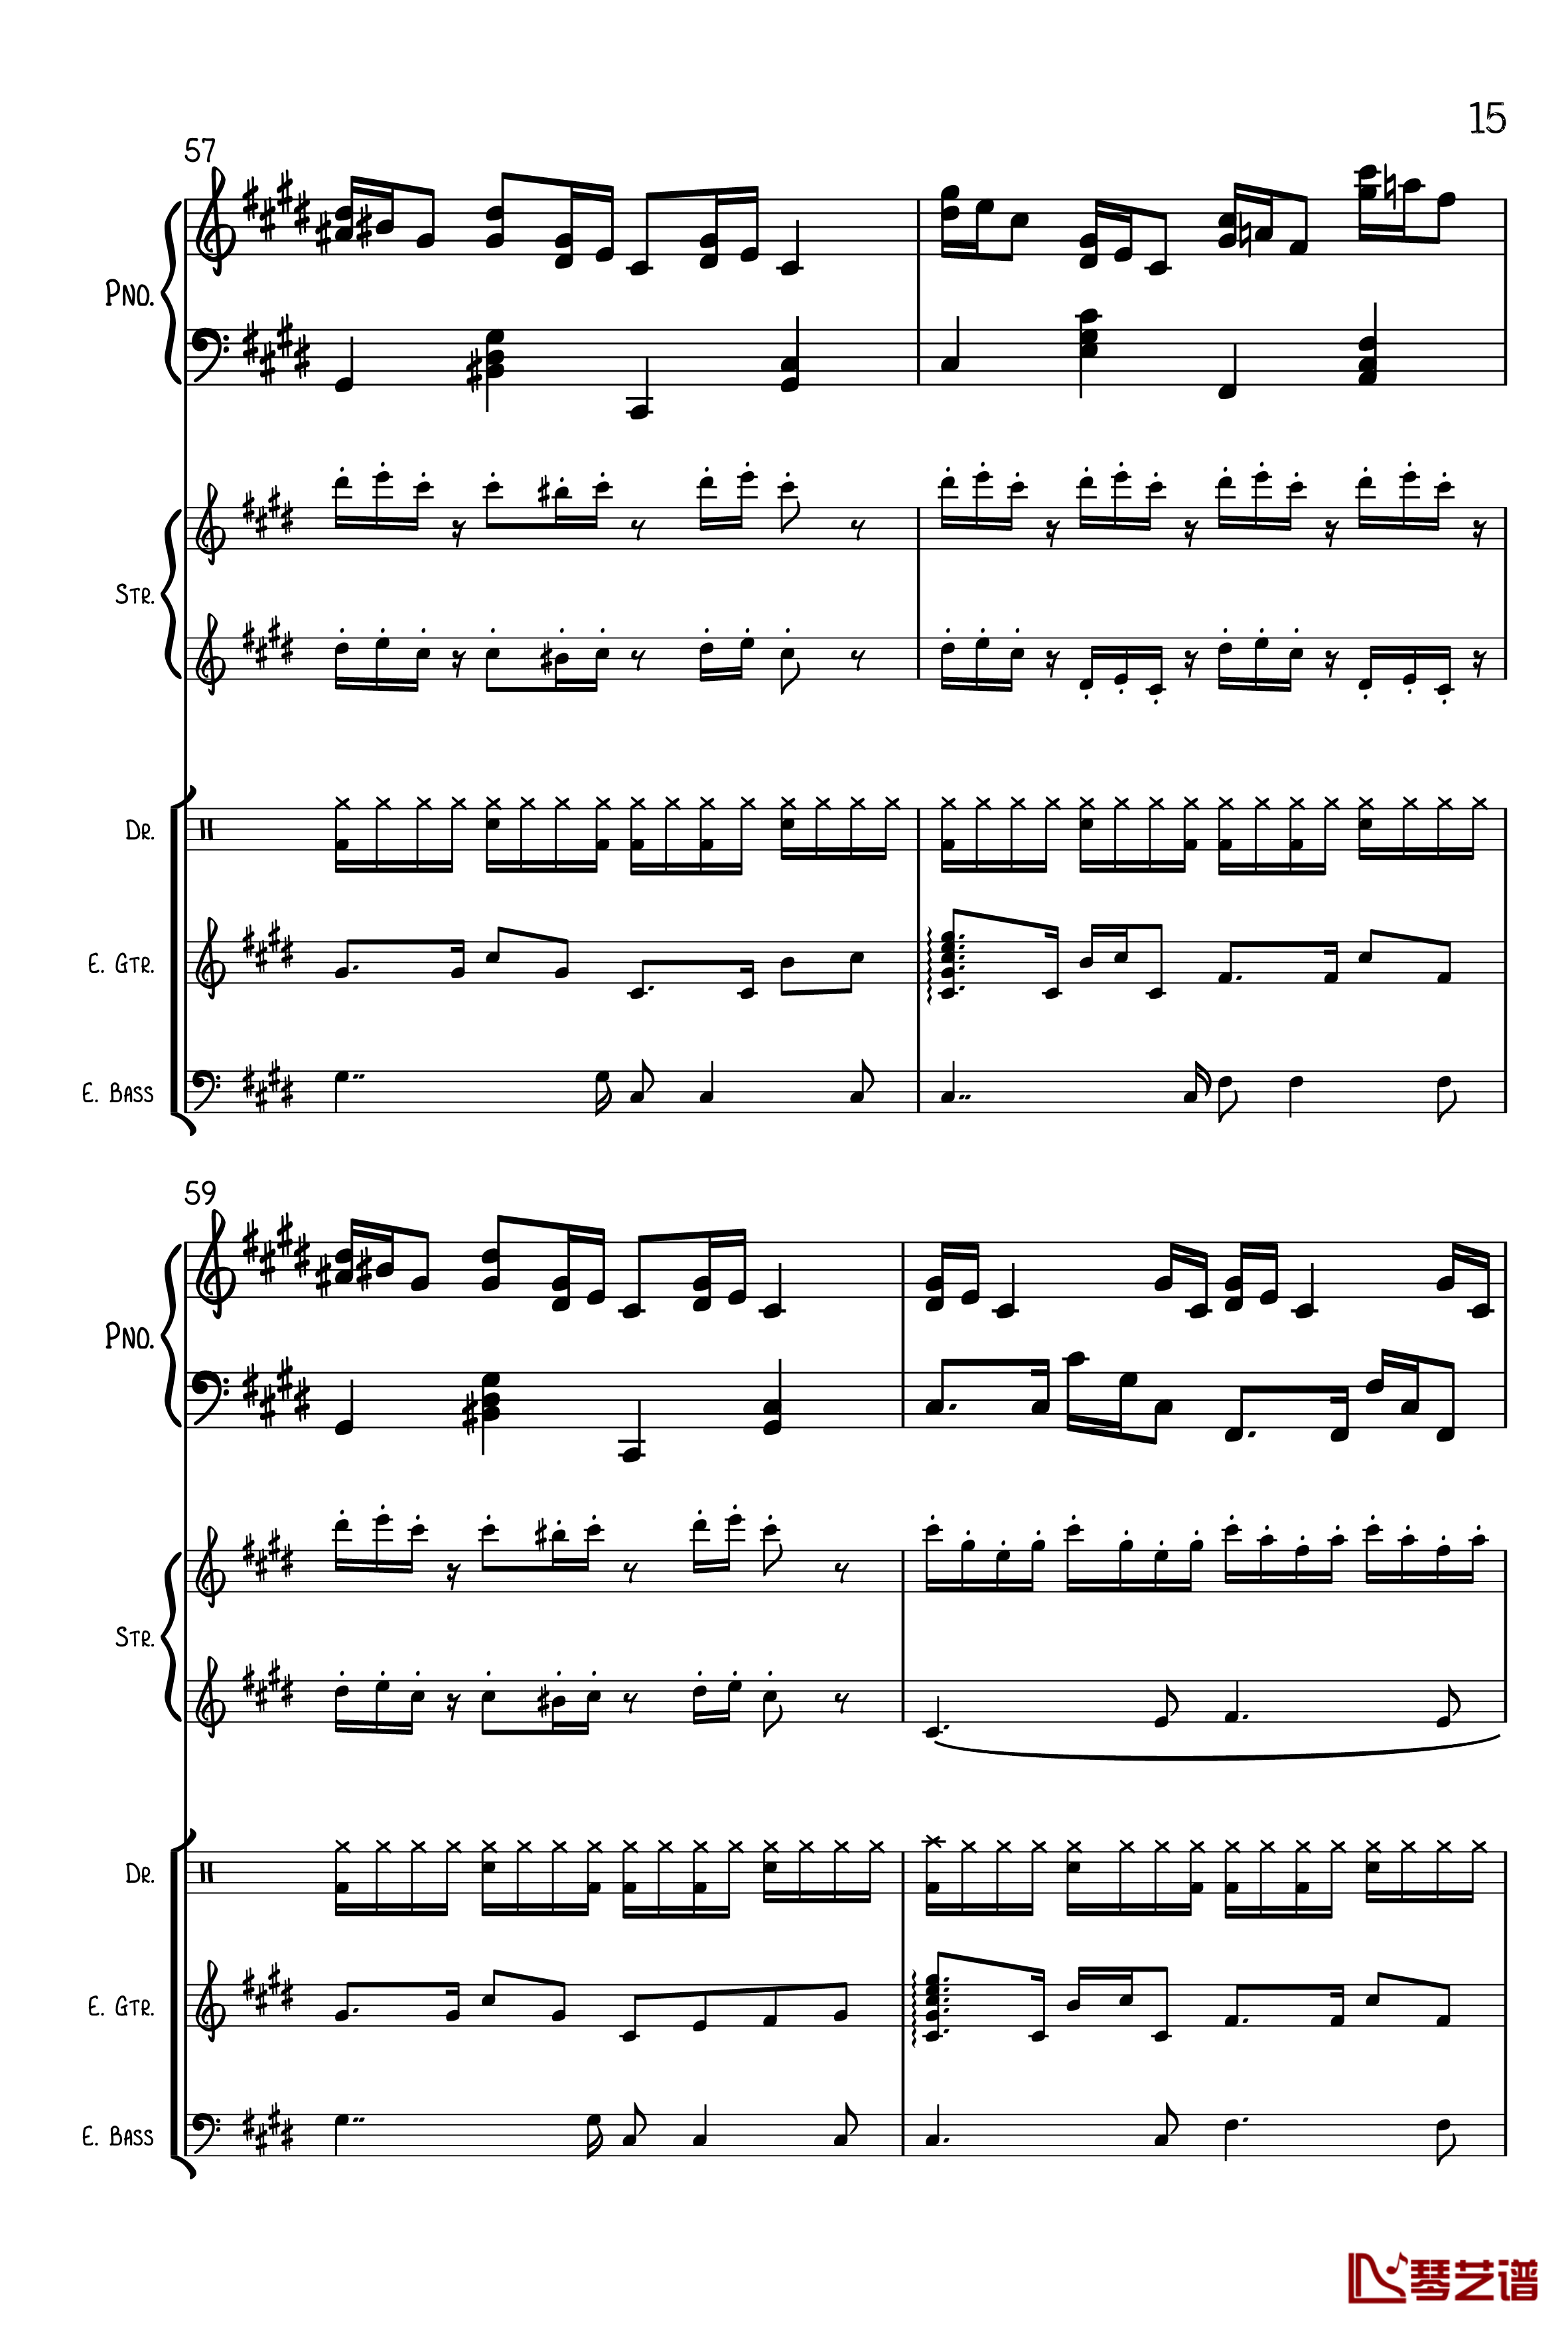 克罗地亚狂想曲钢琴谱-总谱-马克西姆-Maksim·Mrvica15